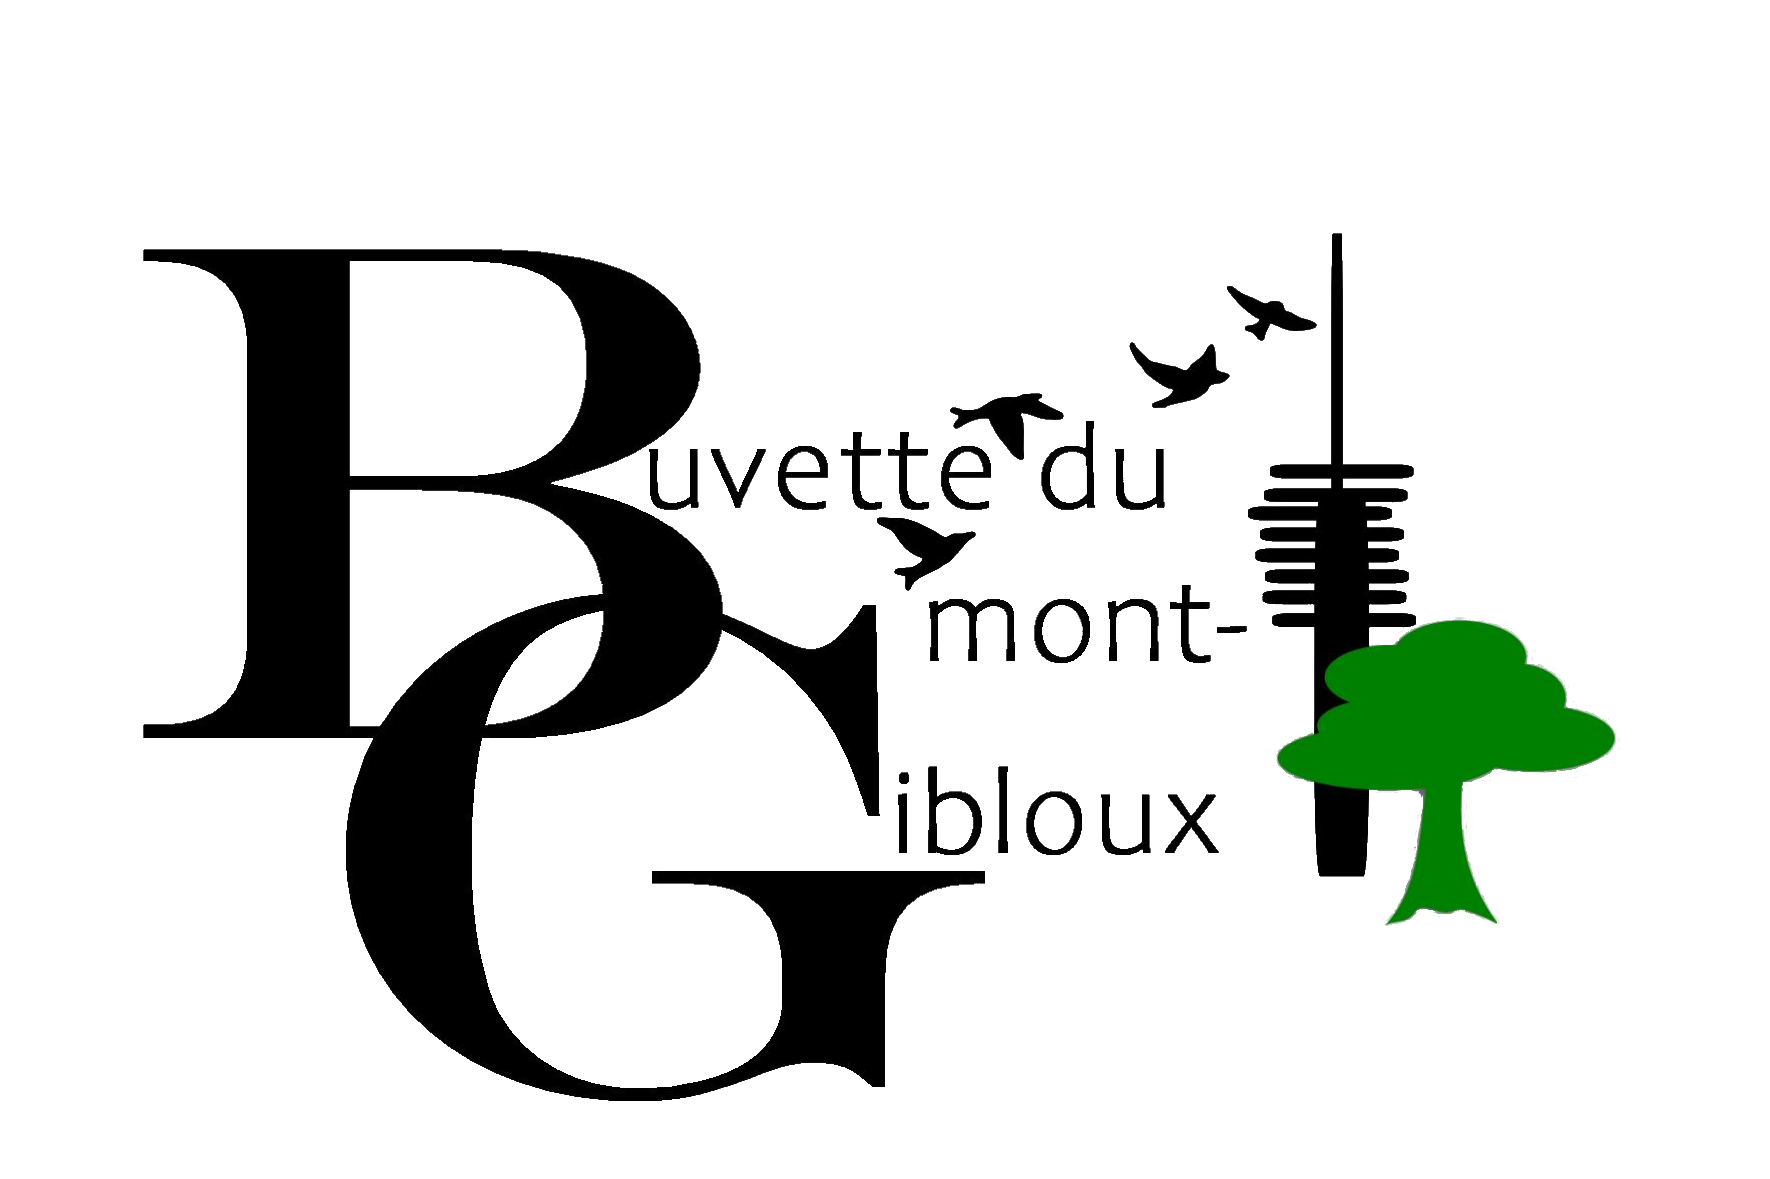 Buvette du Mont-Gibloux